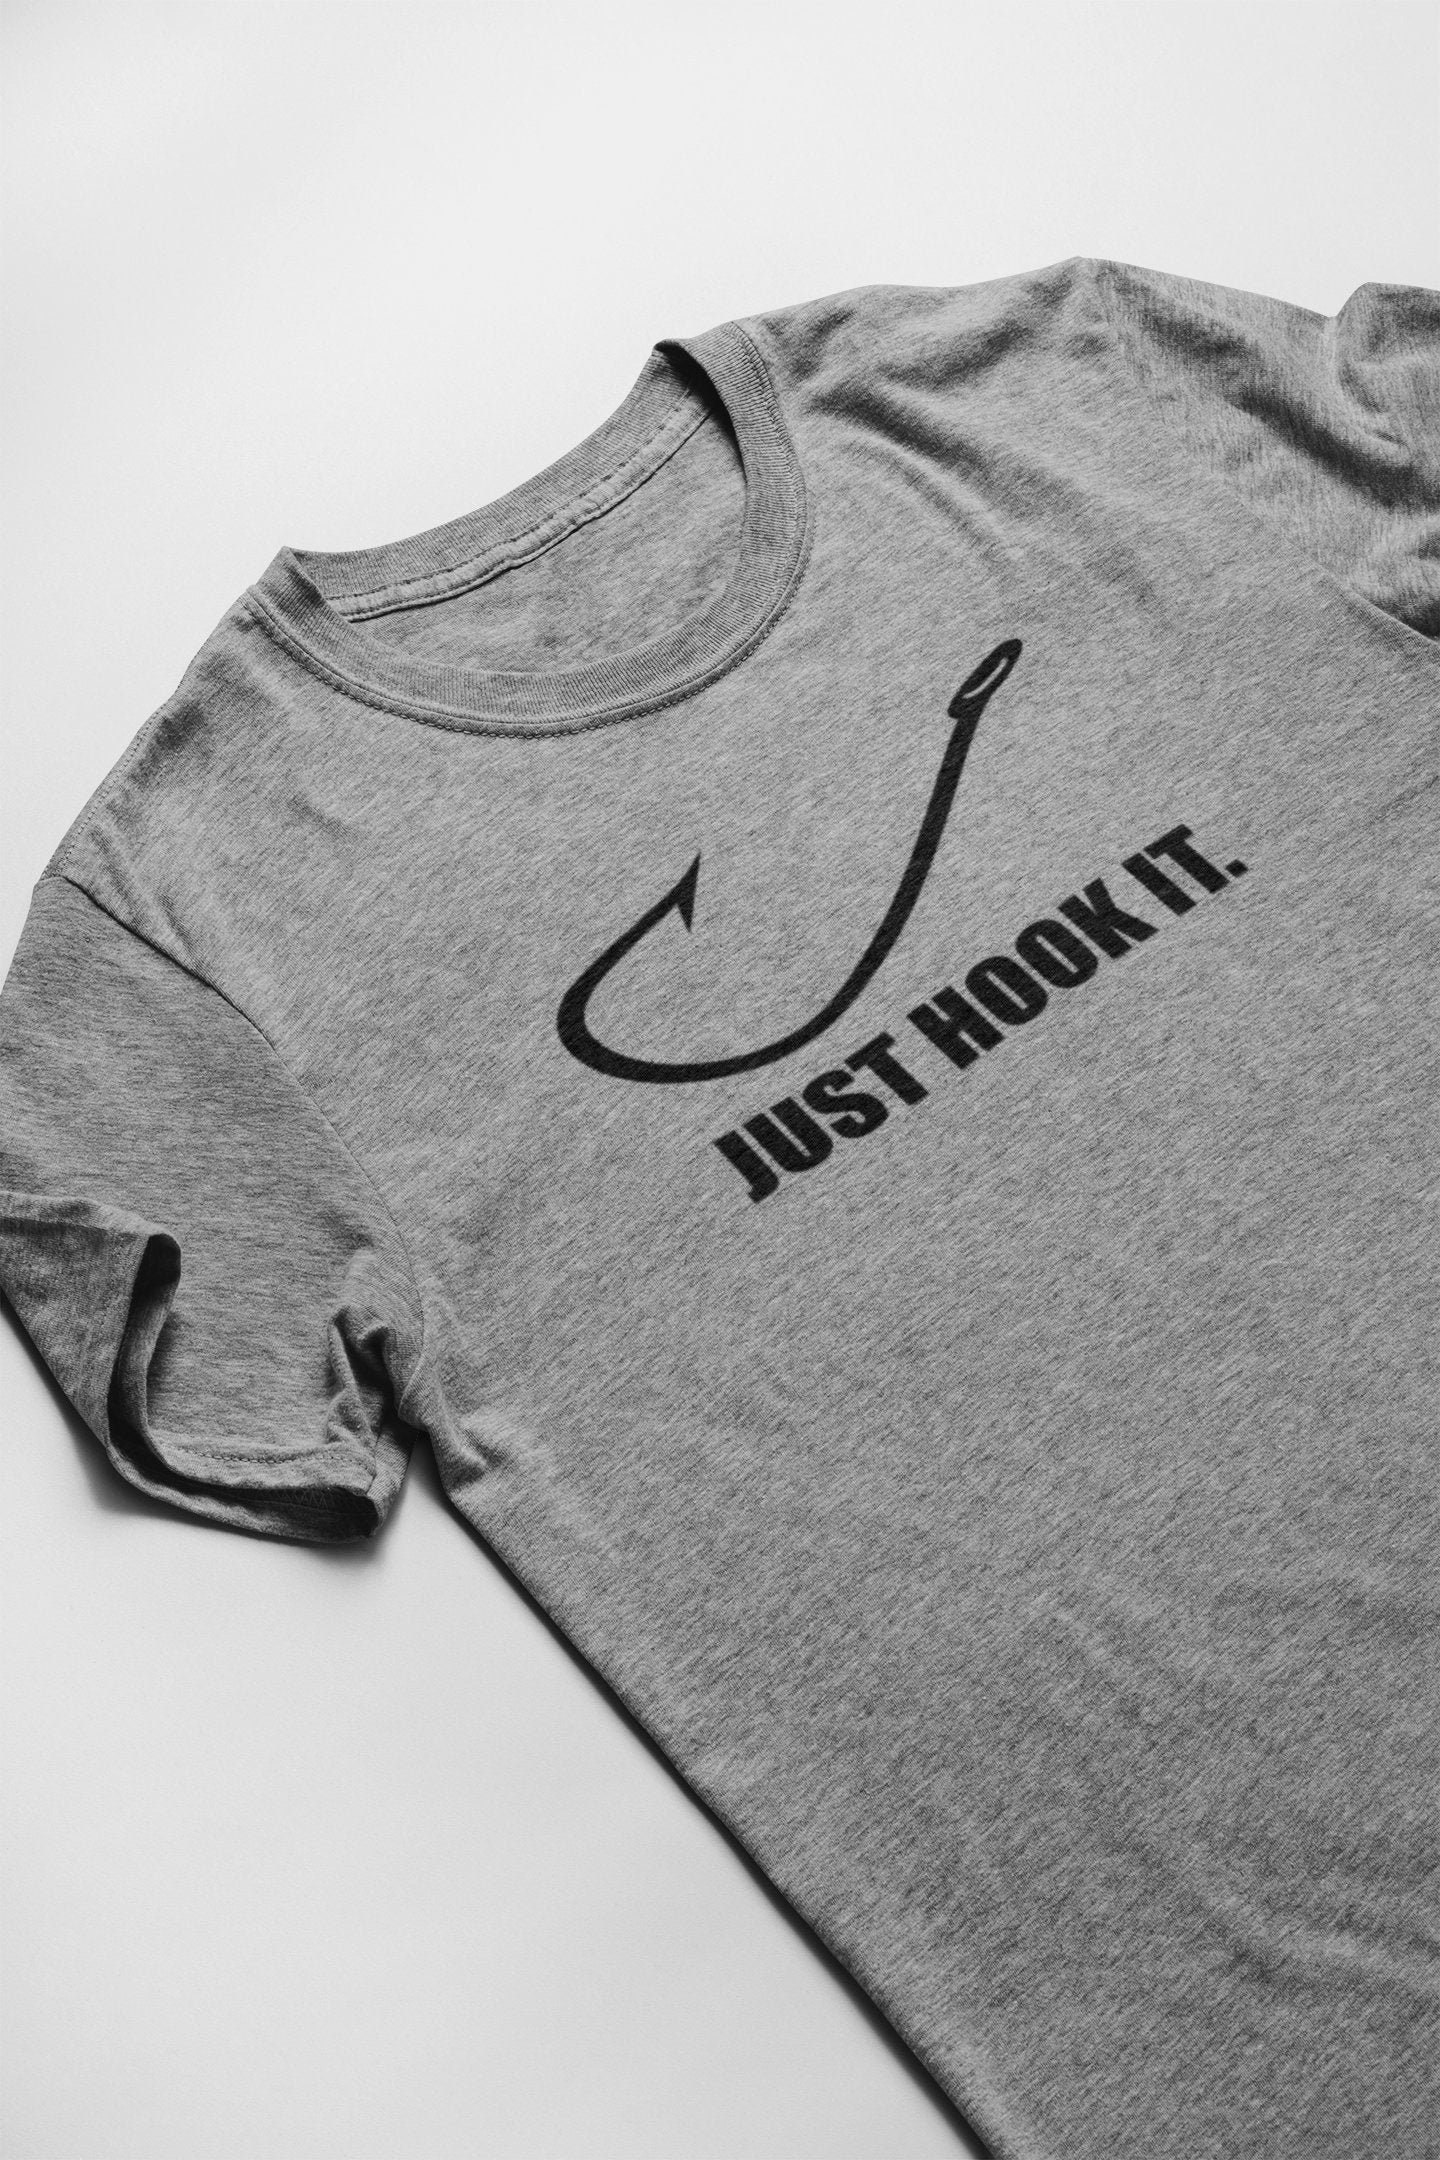 Nike Fishing Tshirt Etsy